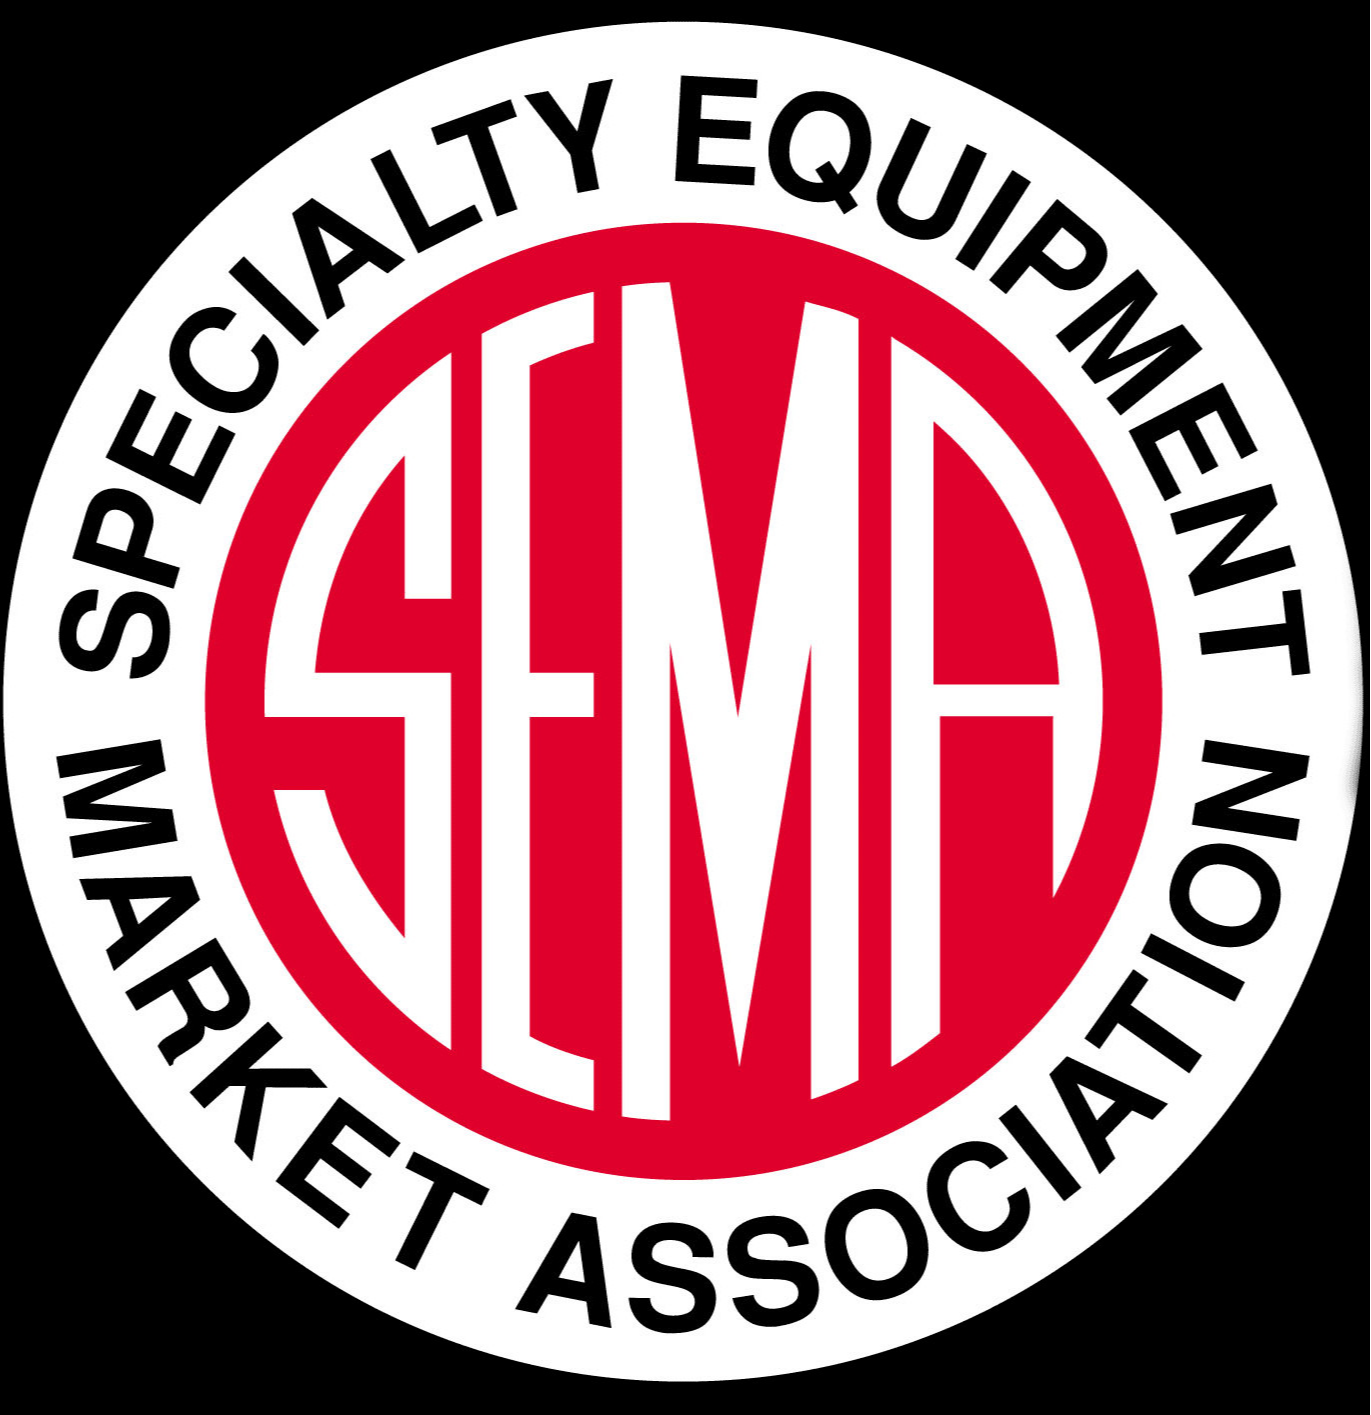 SEMA Show Logo